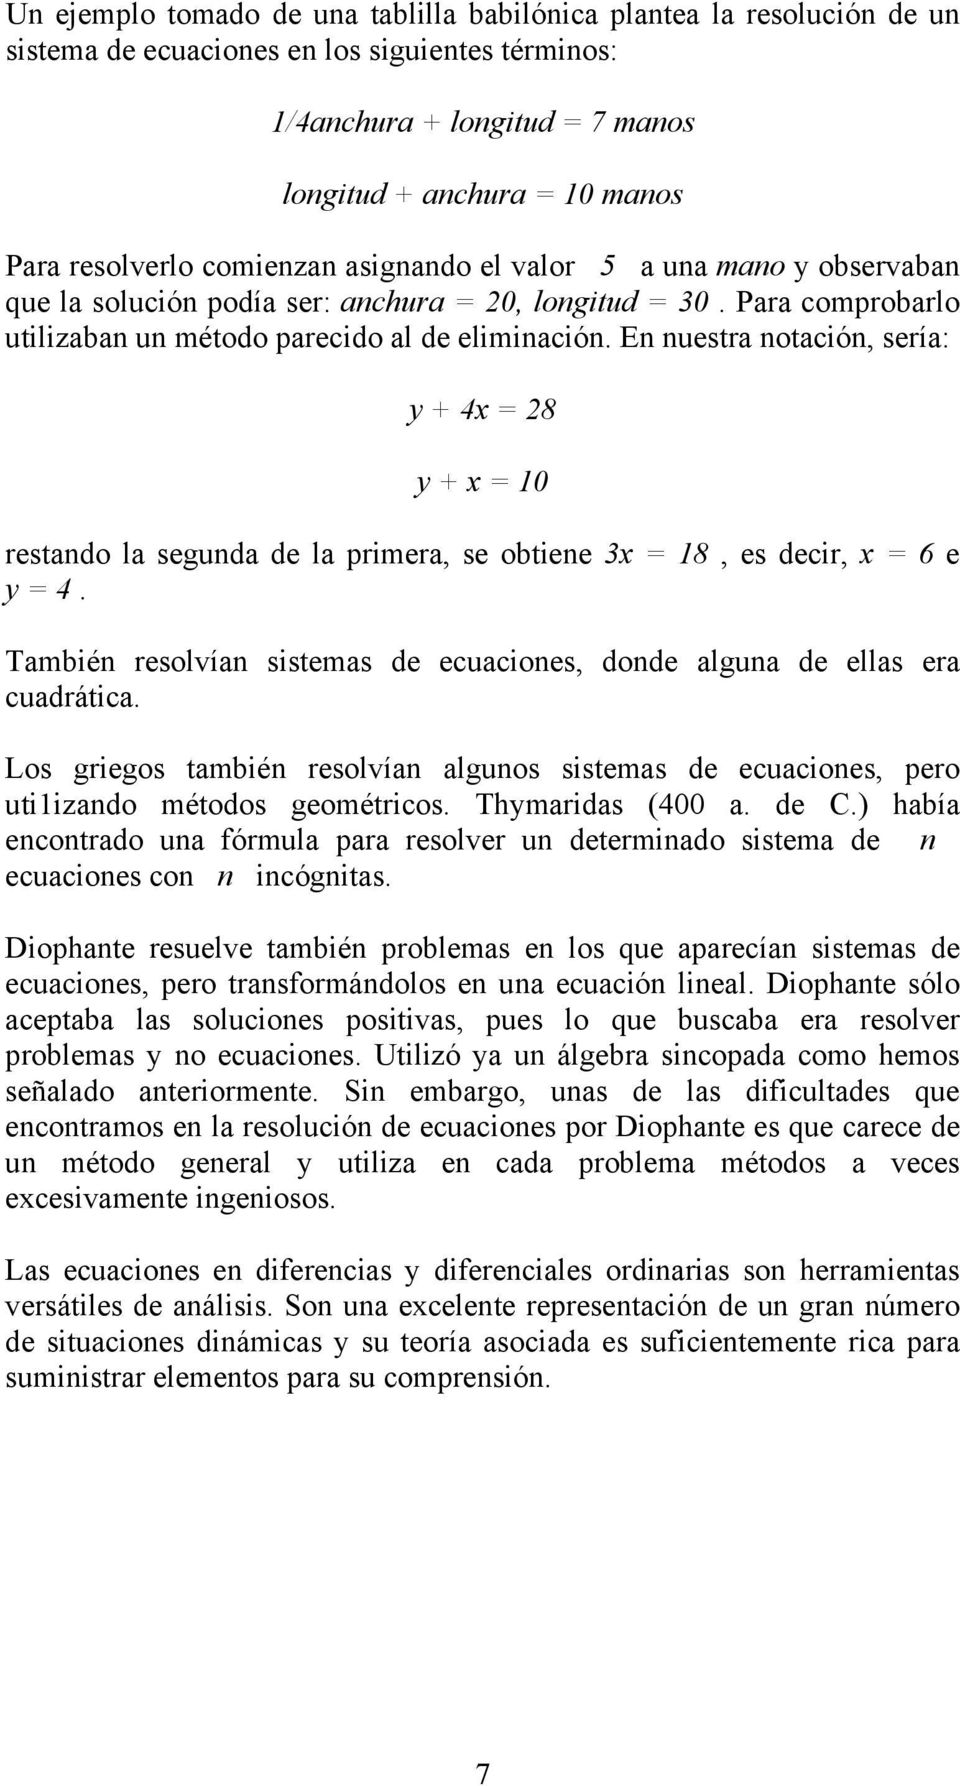 x 8 es decir x 6 e y 4 Tambié resolvía sistemas de ecuacioes dode algua de ellas era cuadrática Los griegos tambié resolvía alguos sistemas de ecuacioes pero utiizado métodos geométricos Thymaridas 4